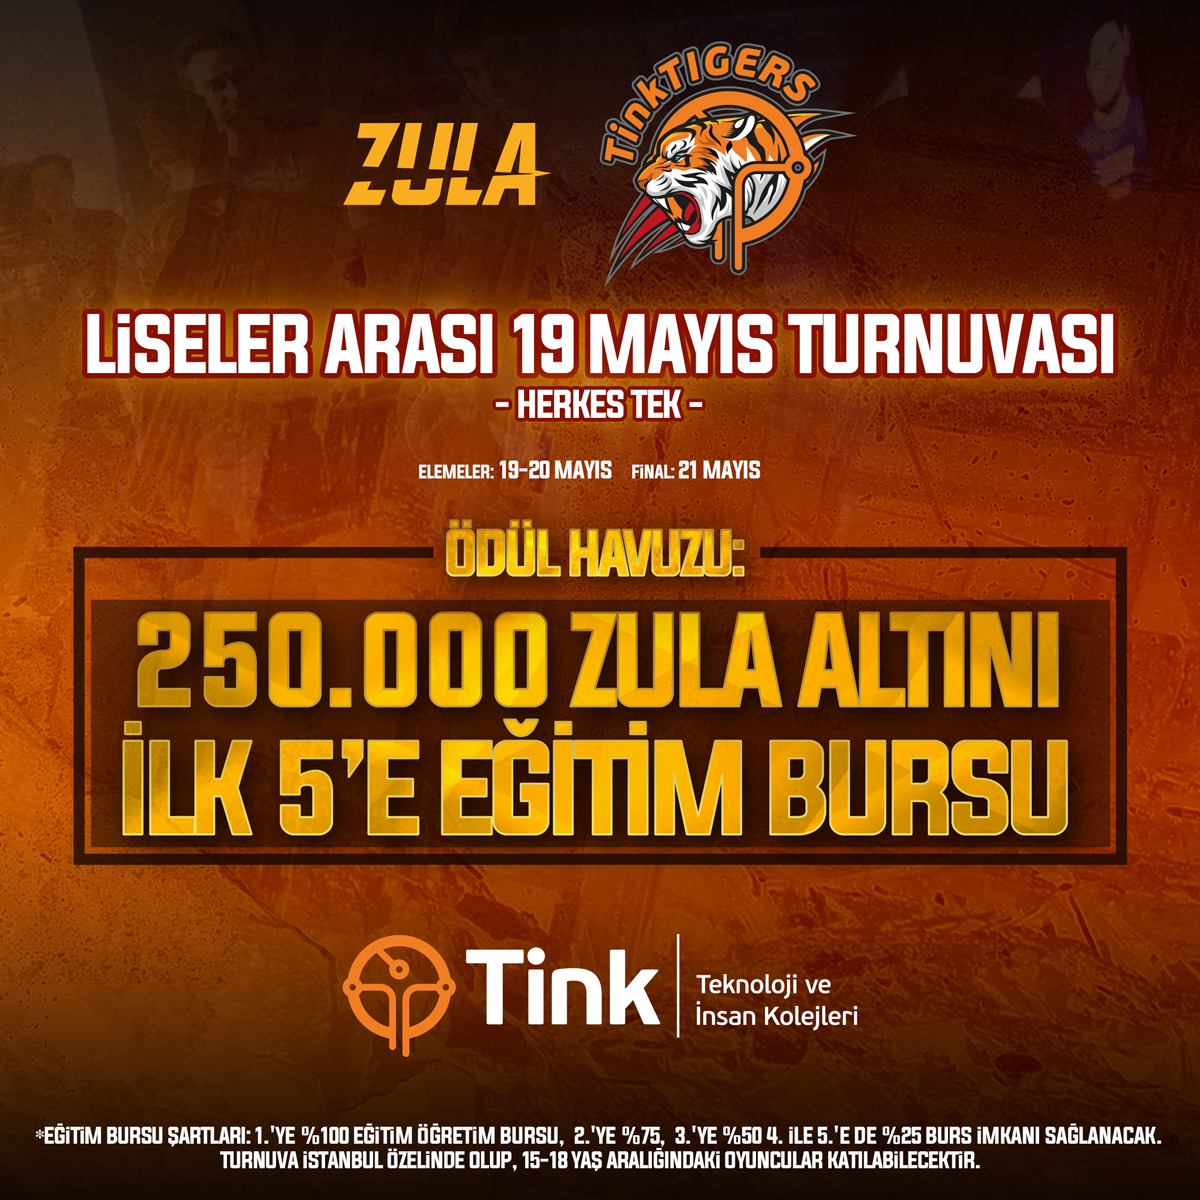 Zula, Tink Kolejleri iş birliğiyle “19 Mayıs Zula Turnuvası” düzenliyor esportimes